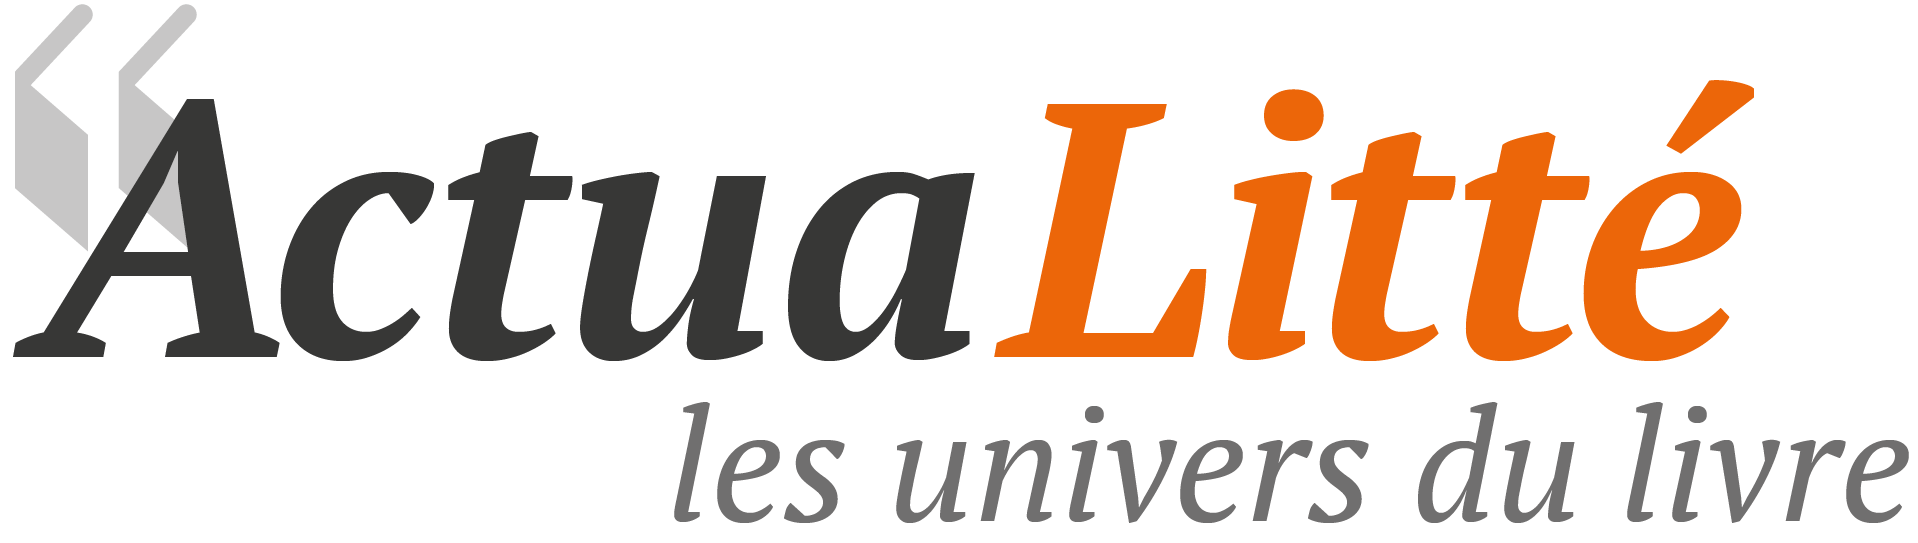 logo Actualitté